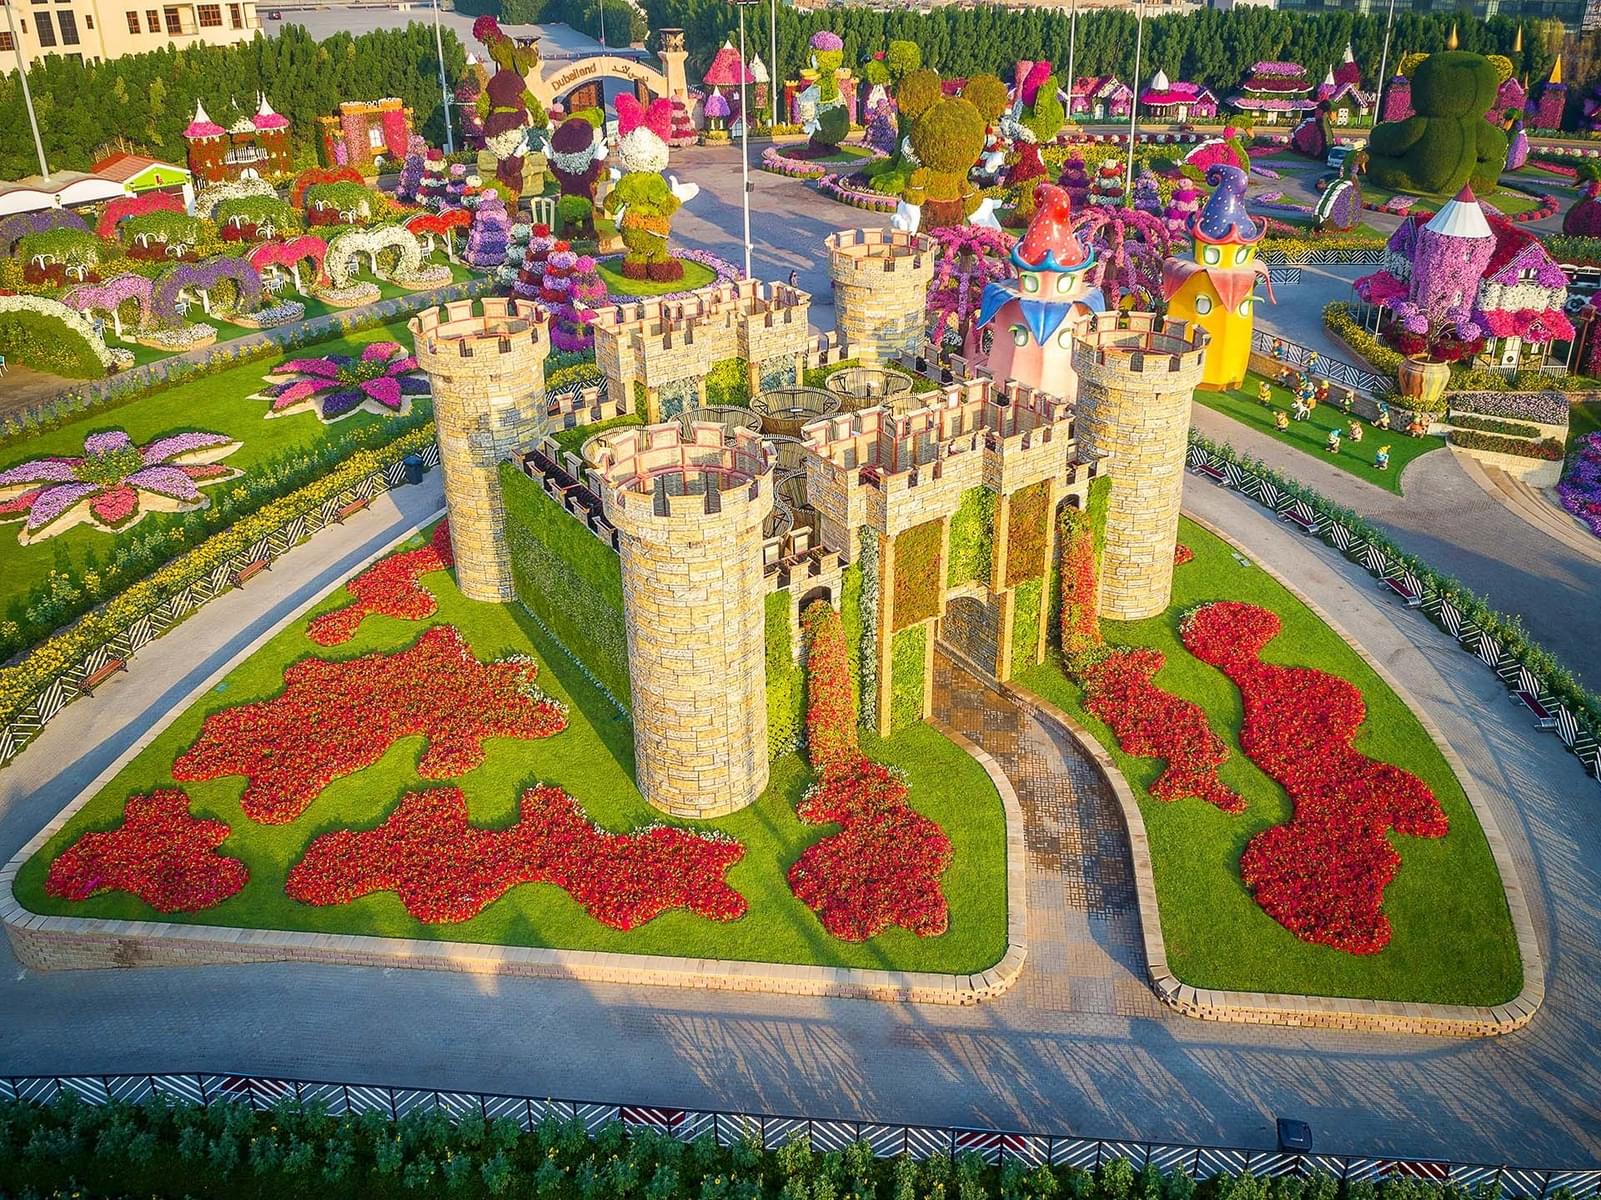 Enjoy at Floral Castle